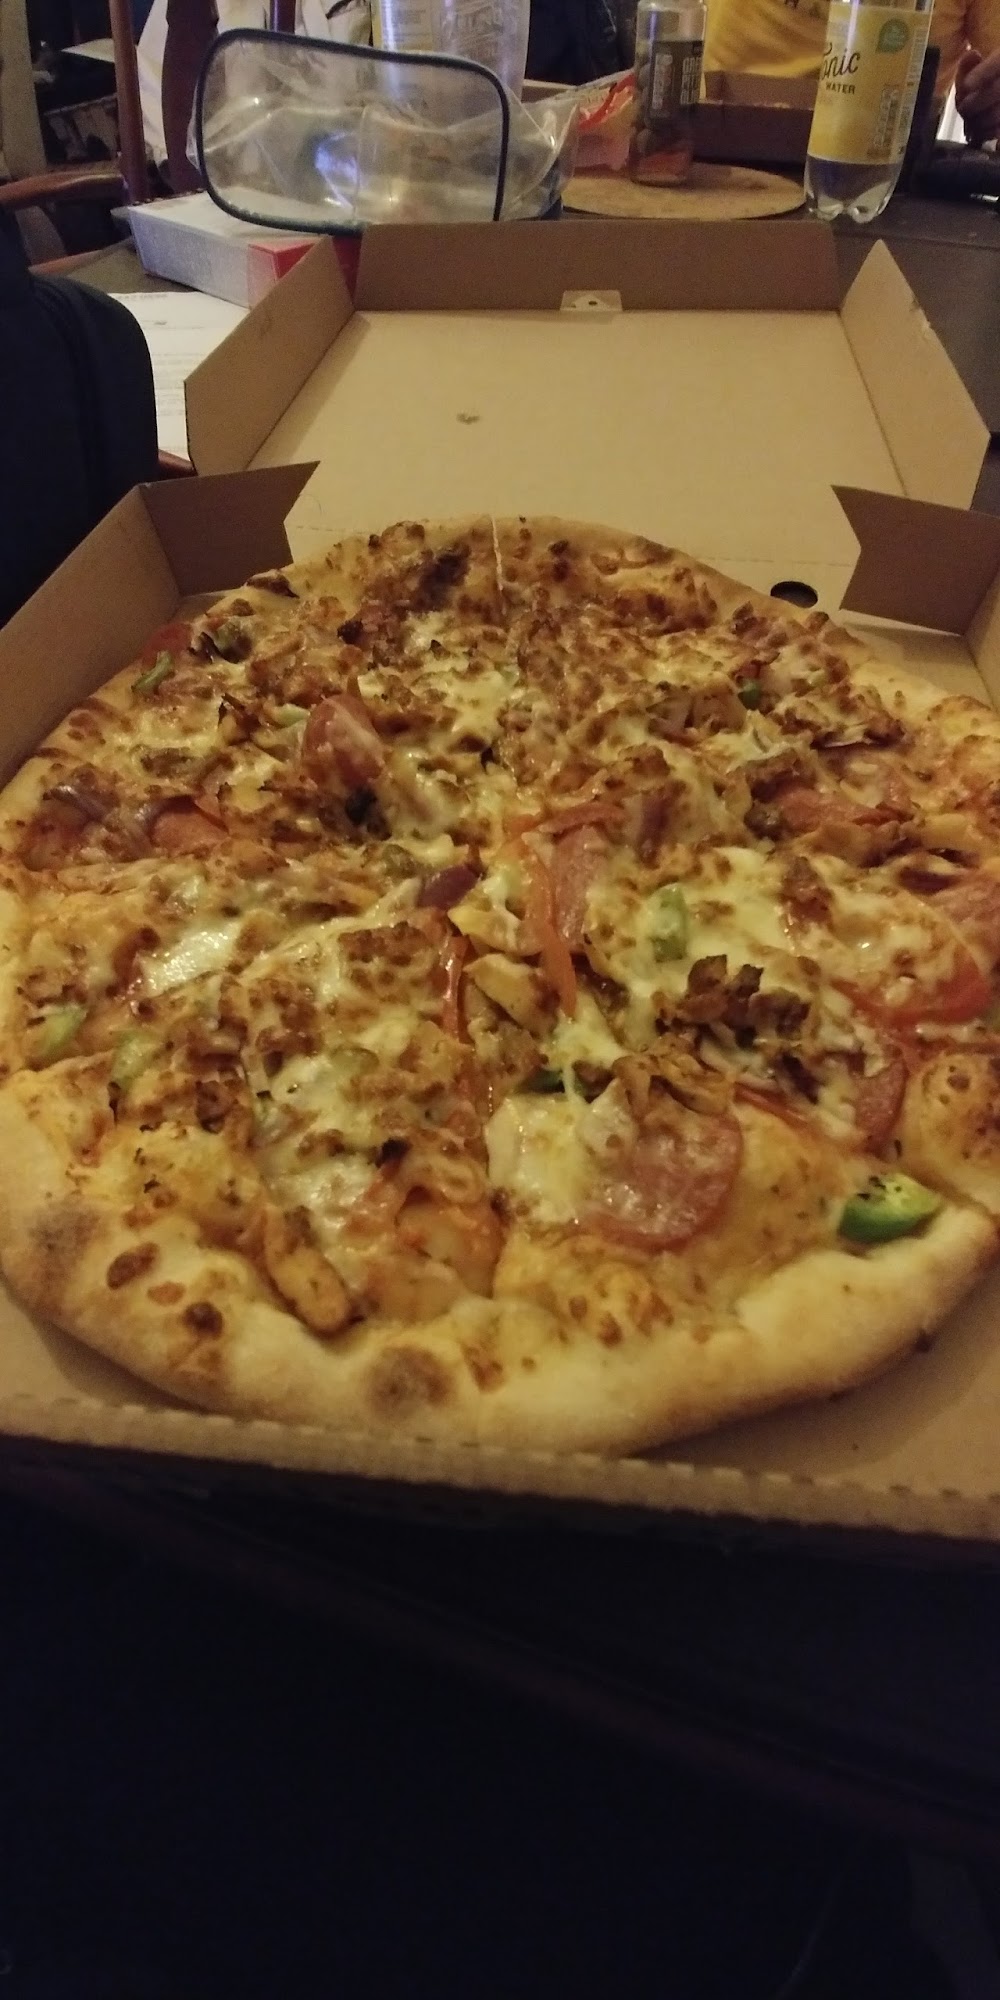 Pizza Amicos